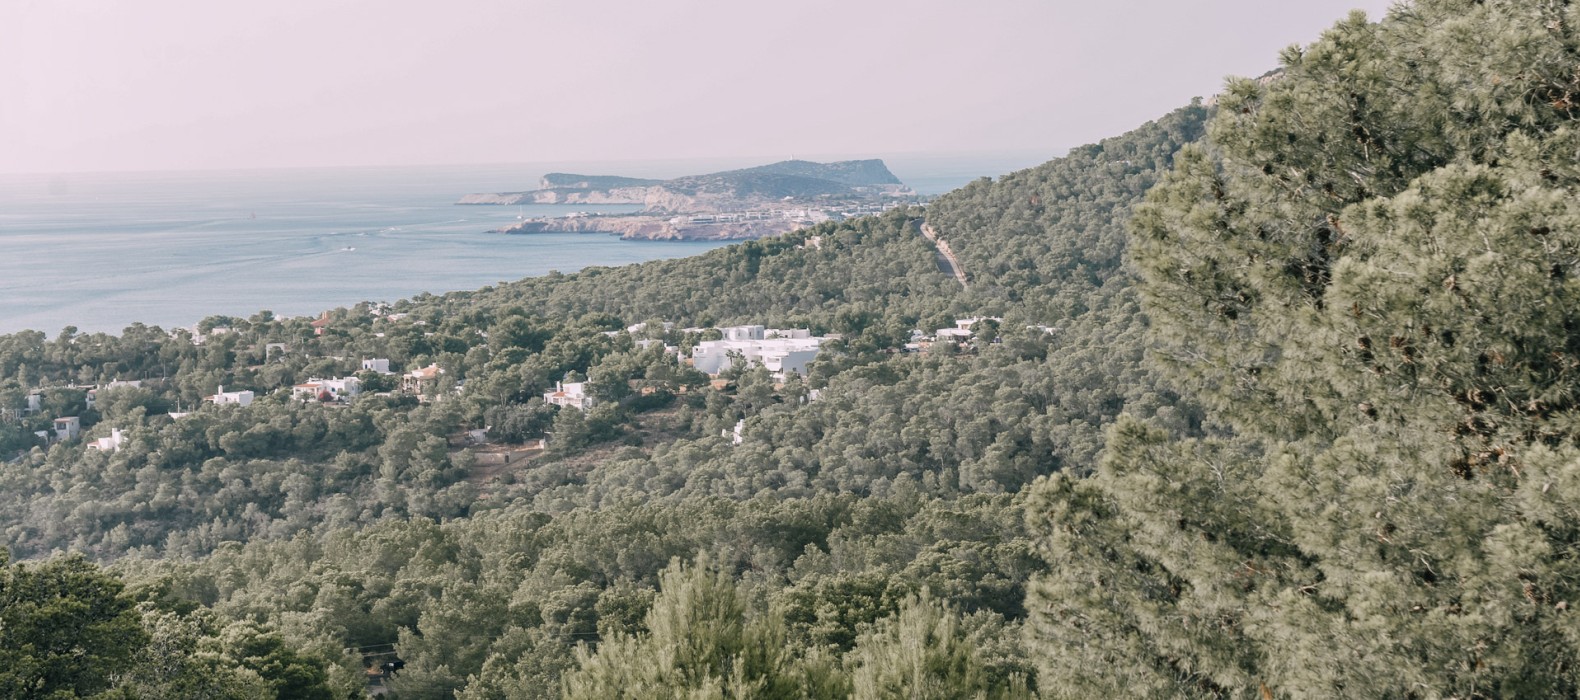 Location of Villa La Colina in Ibiza